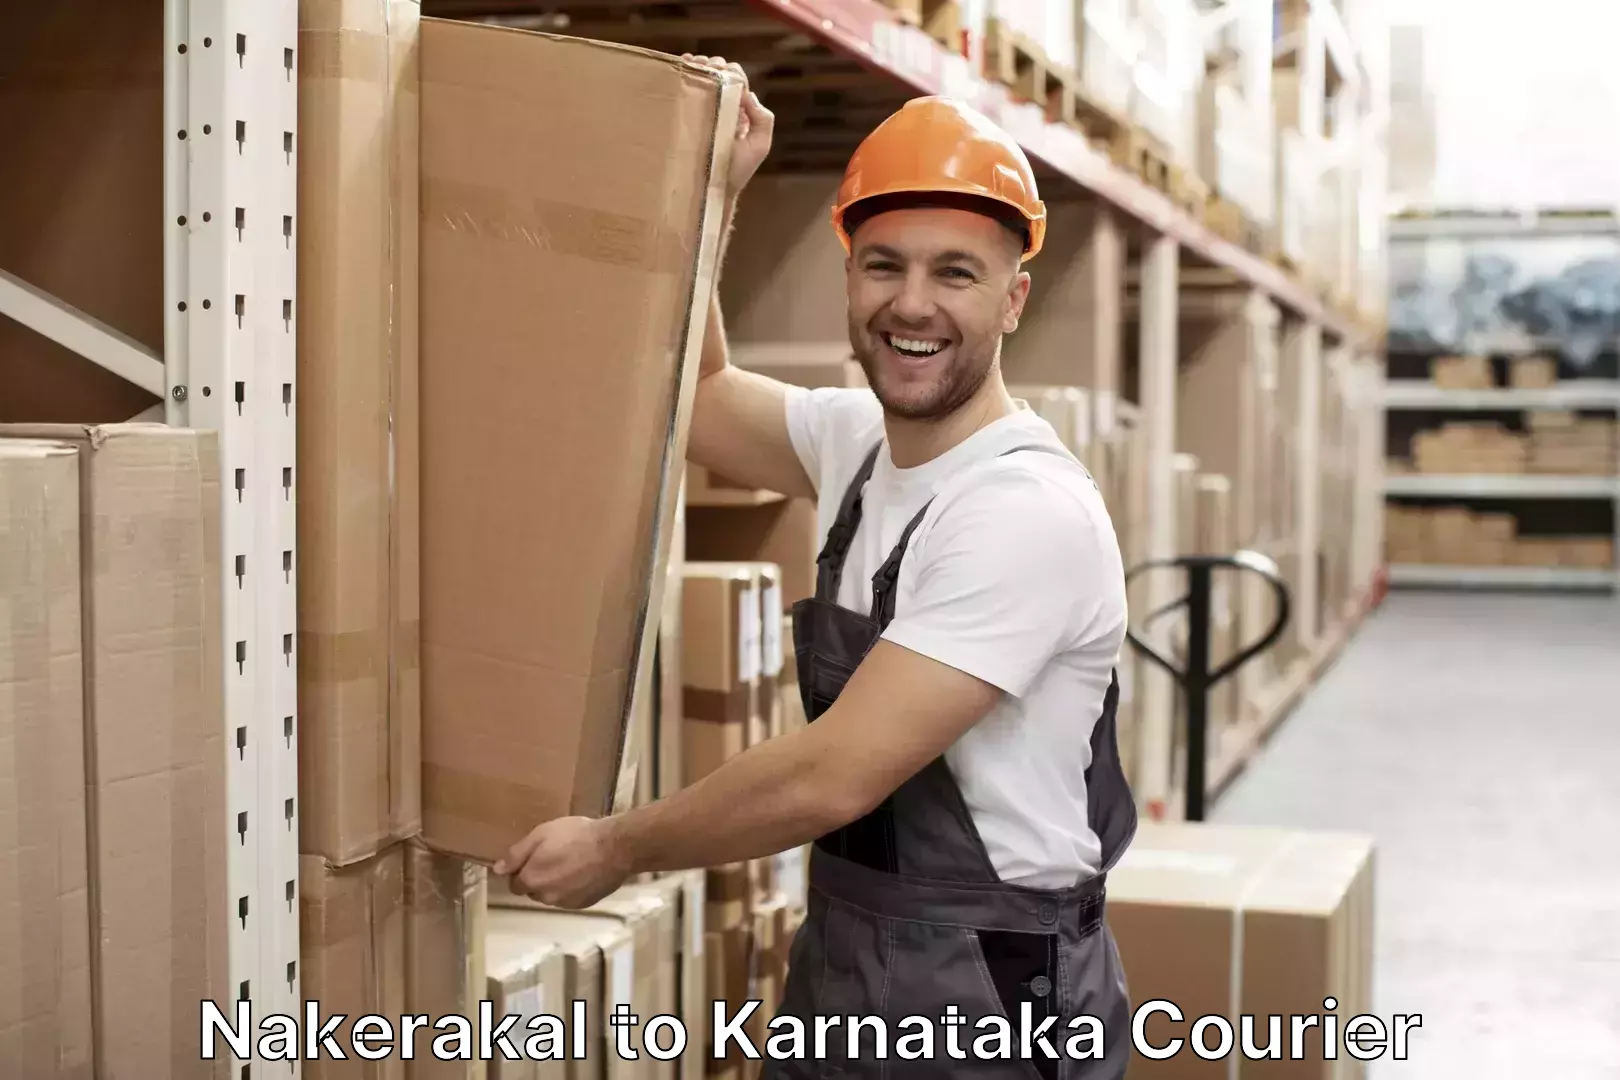 Luggage shipping planner Nakerakal to Kudligi